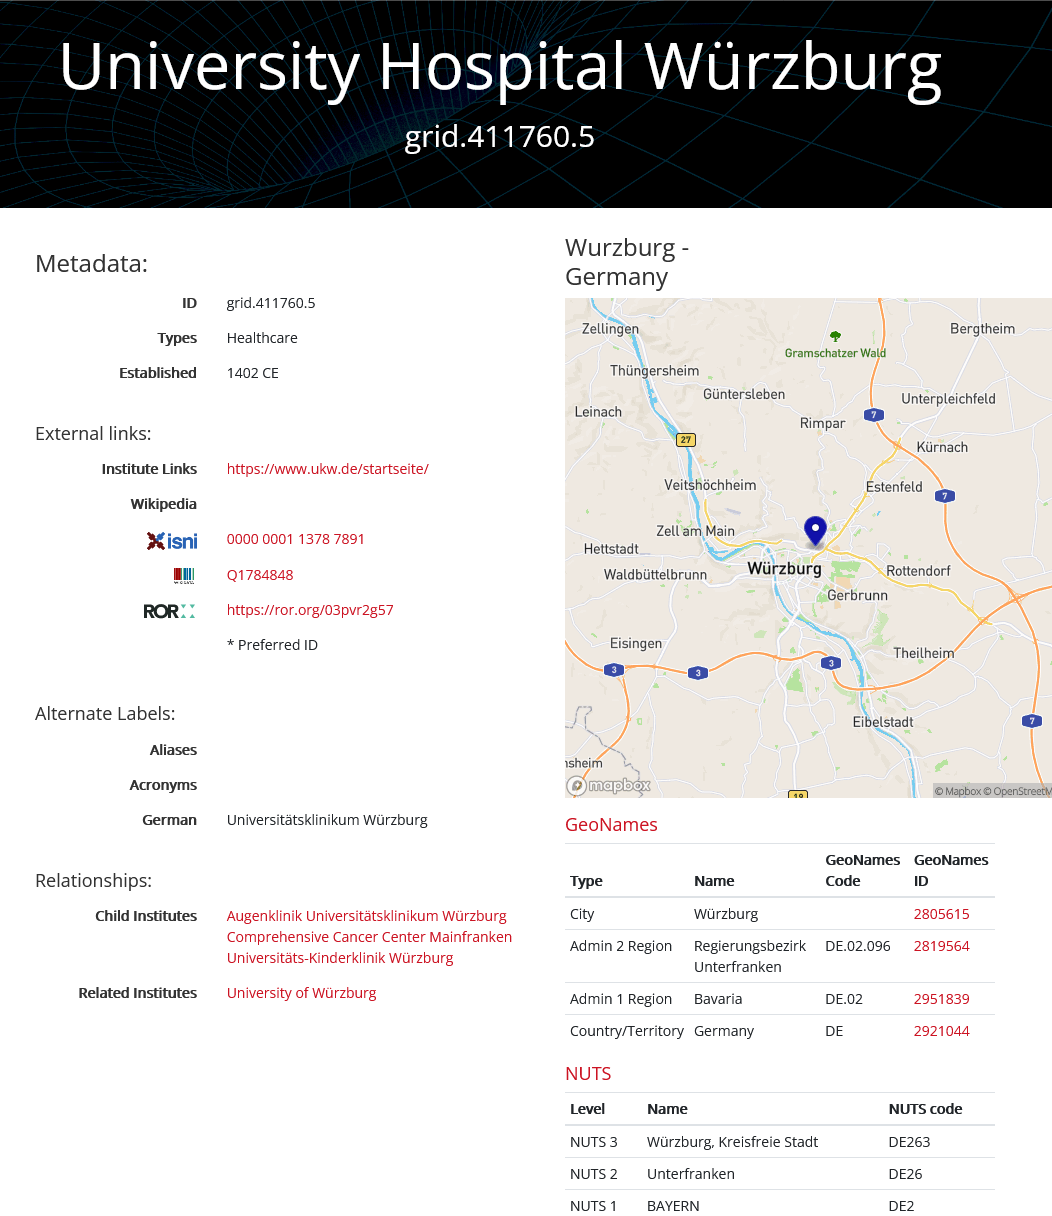 Abb. 4: Screenshot des GRID-Eintrages des Universitätsklinikums Würzburg (Datensatz für das Universitätsklinikum Würzburg in GRID: https://grid.ac/institutes/grid.411760.5. Abgerufen am 17.03.2022).